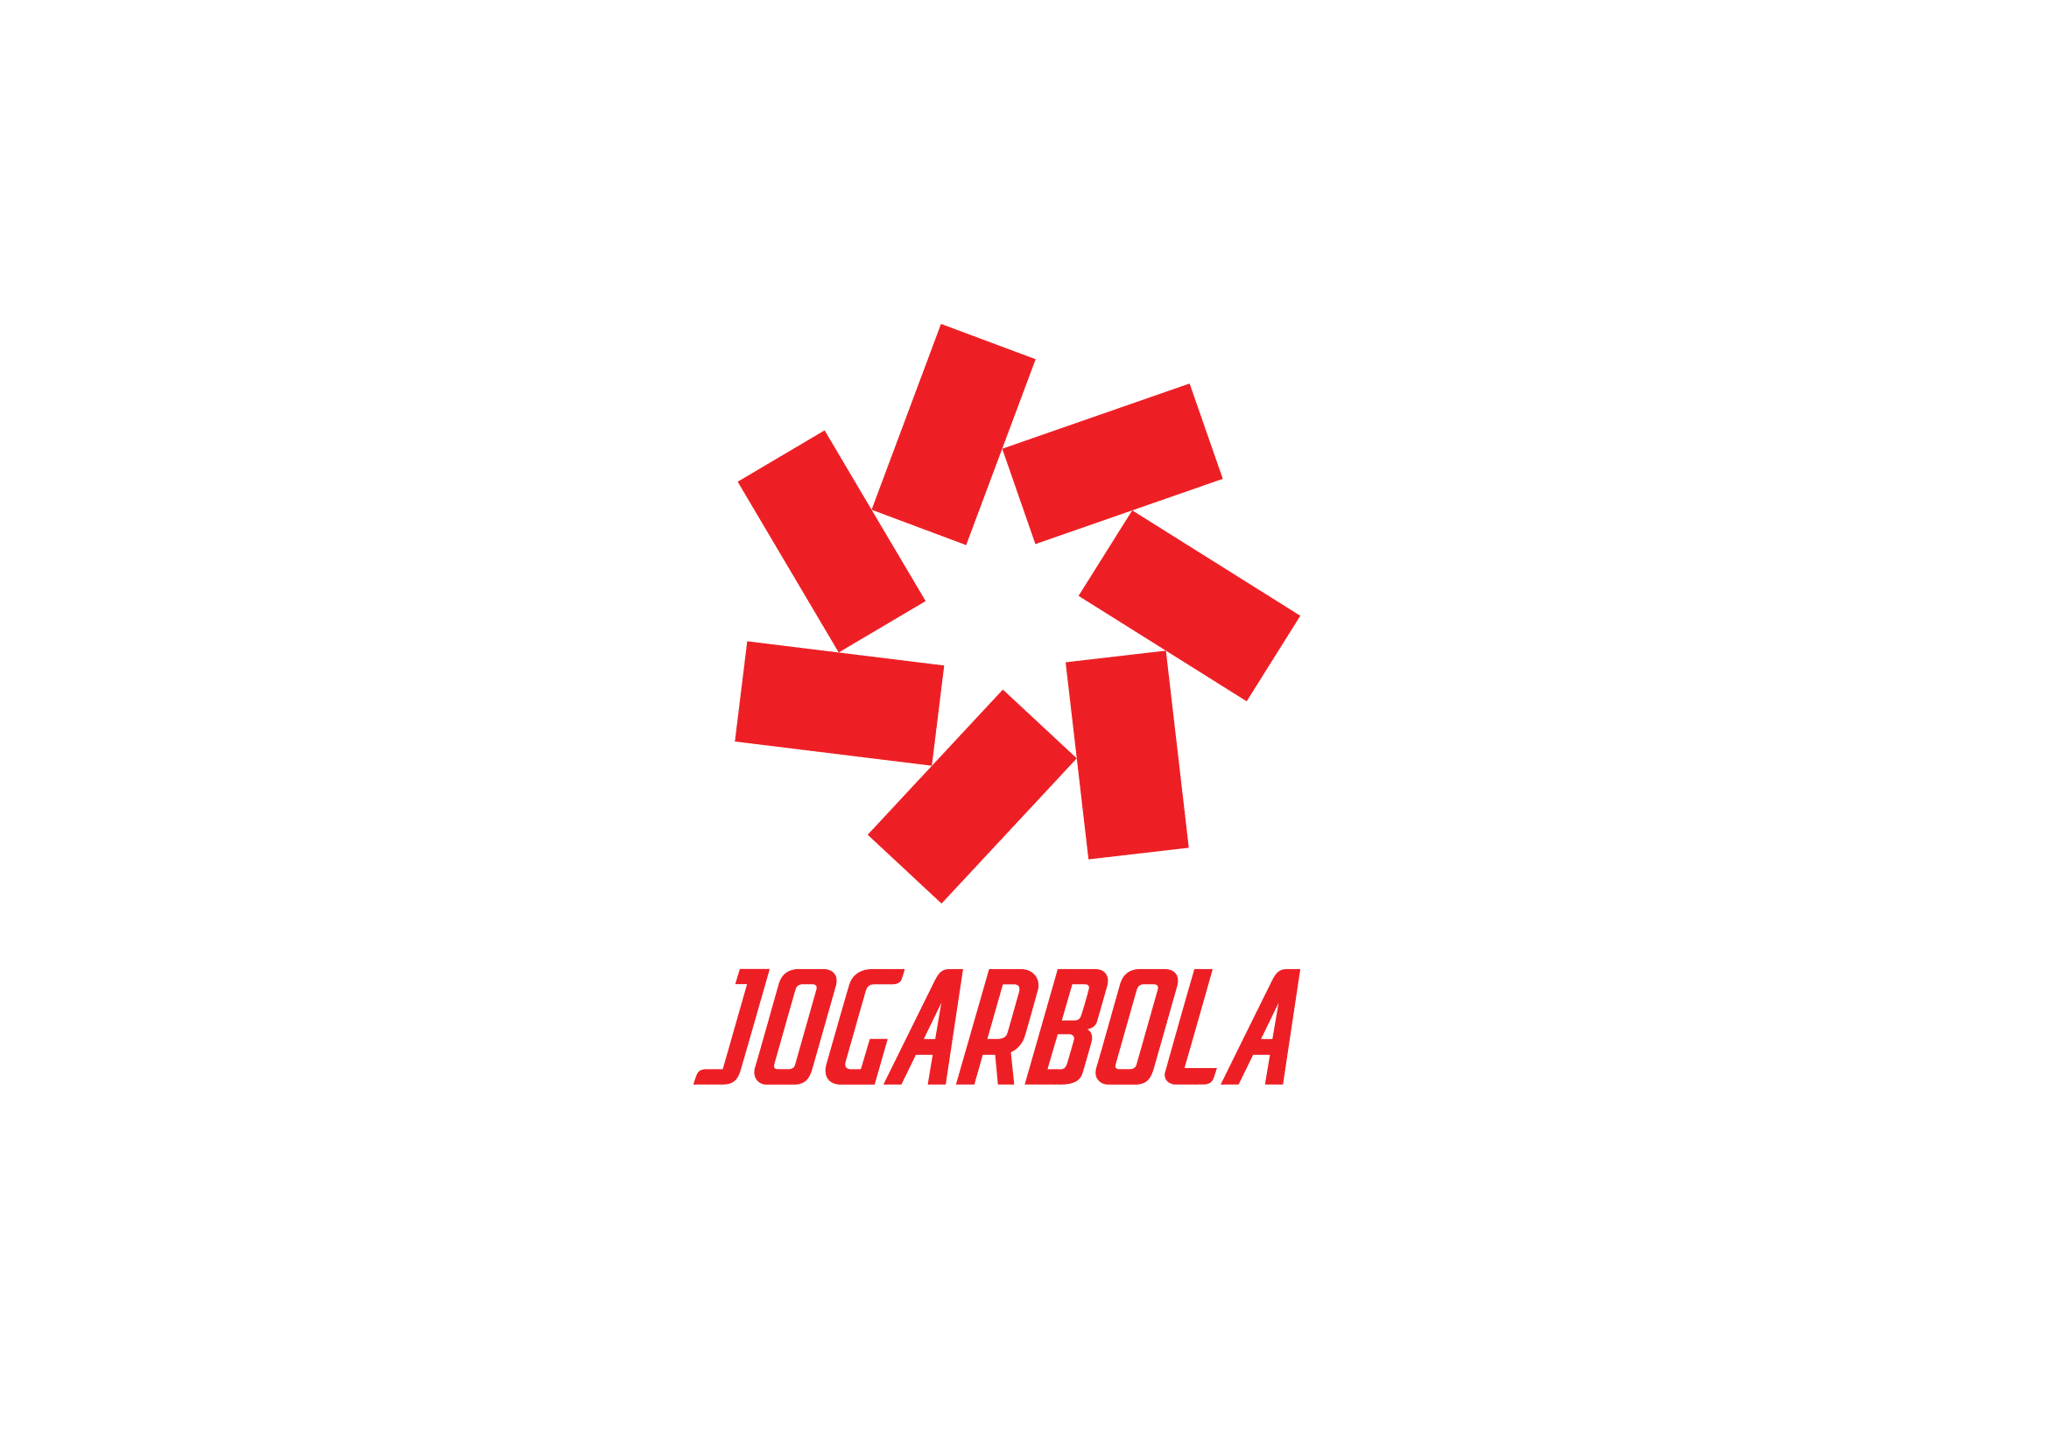 Jogarbola giới thiệu logo mới với BST Đội tuyển bóng đá Quốc gia